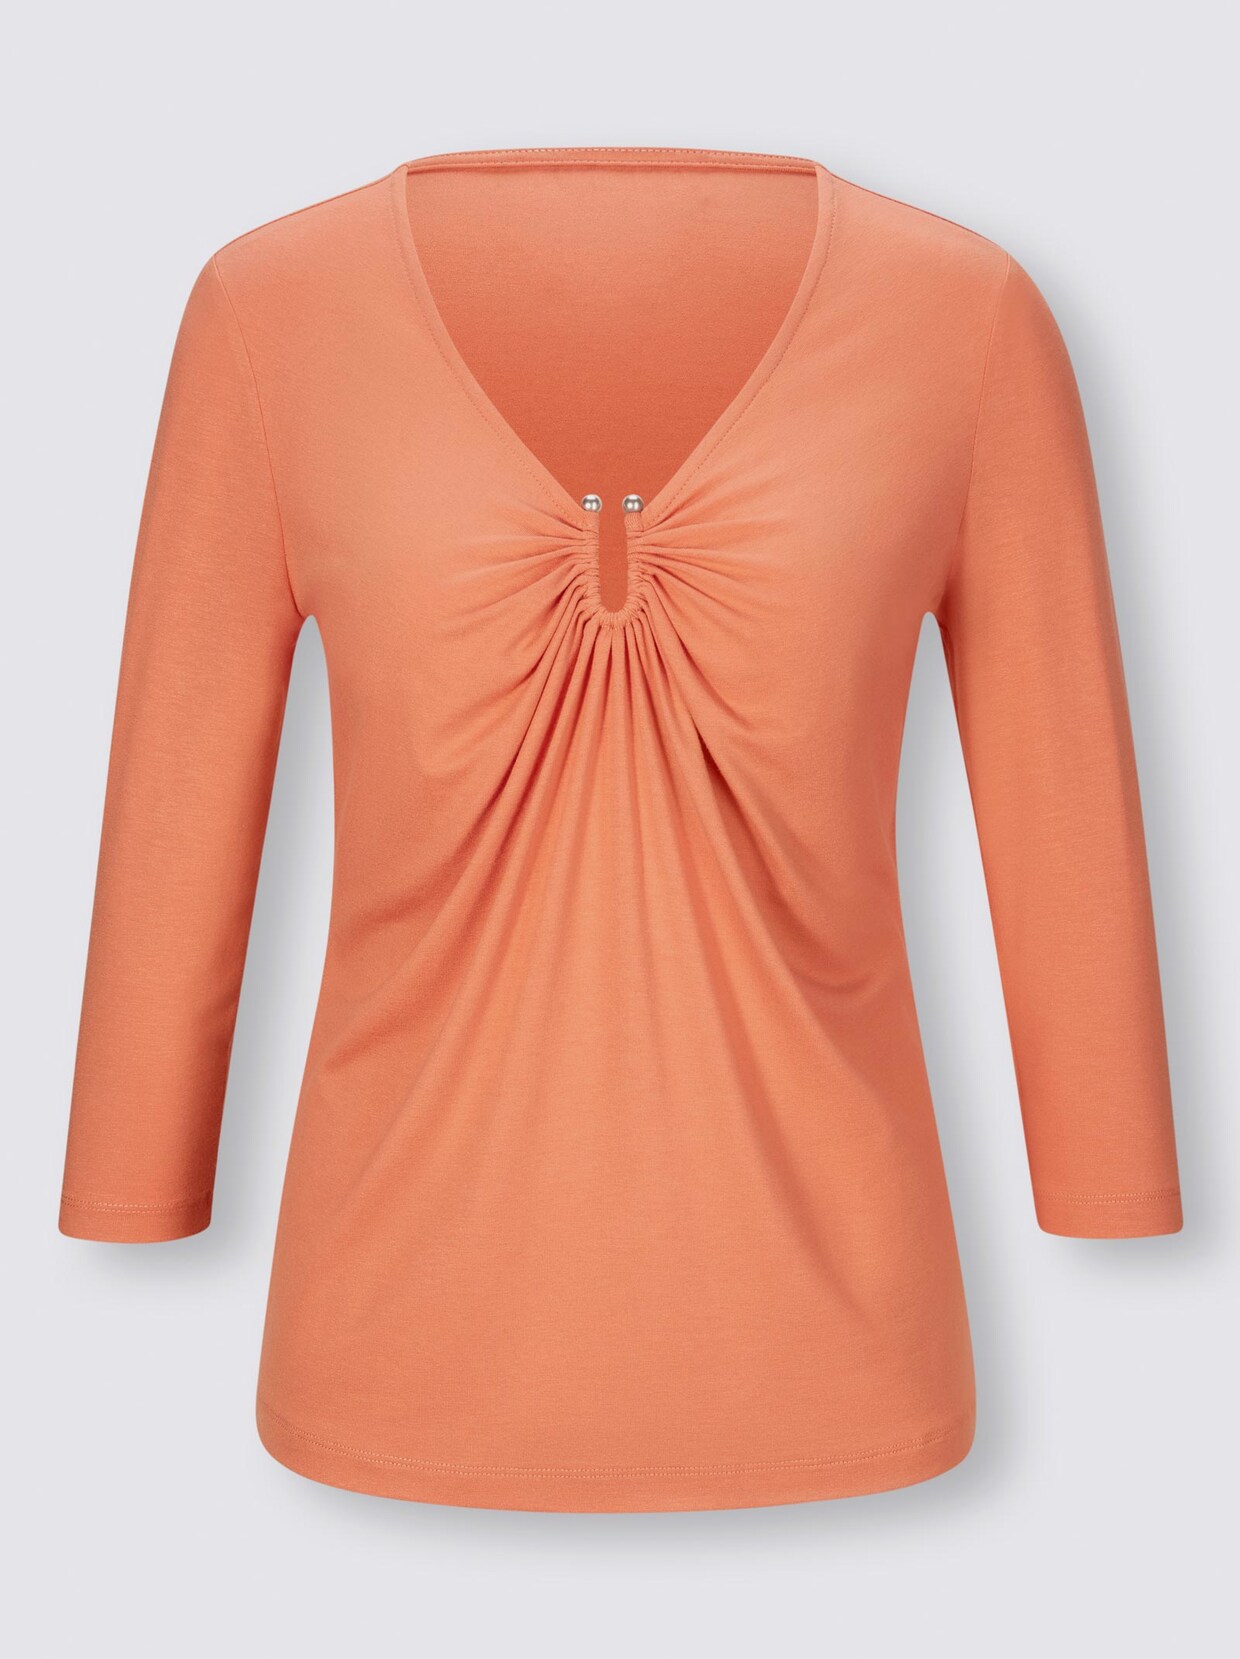 Ashley Brooke Shirt - mandarine